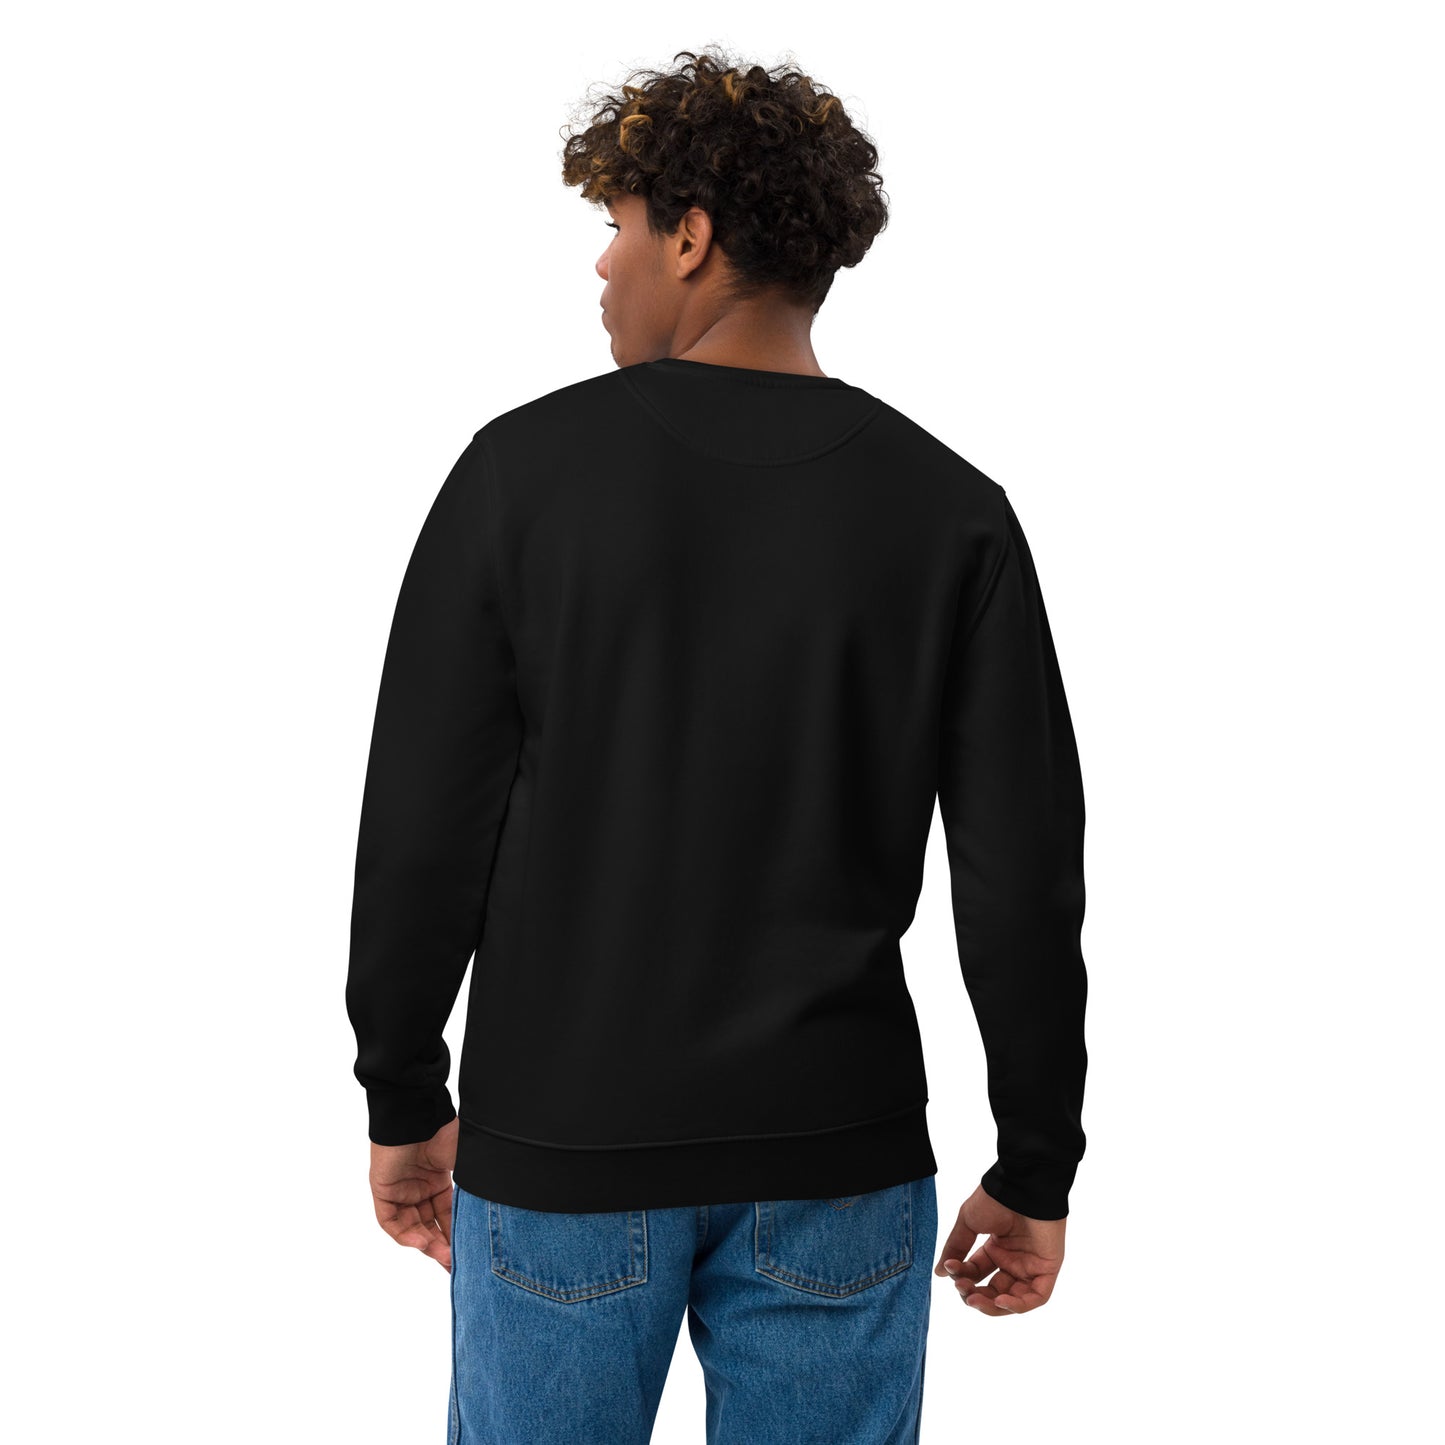 TE025.2 - Unisex Bio-Pullover - Sweater - Sweatshirt - Social Media Trend - Ich küss dein Auge 1 - white logo